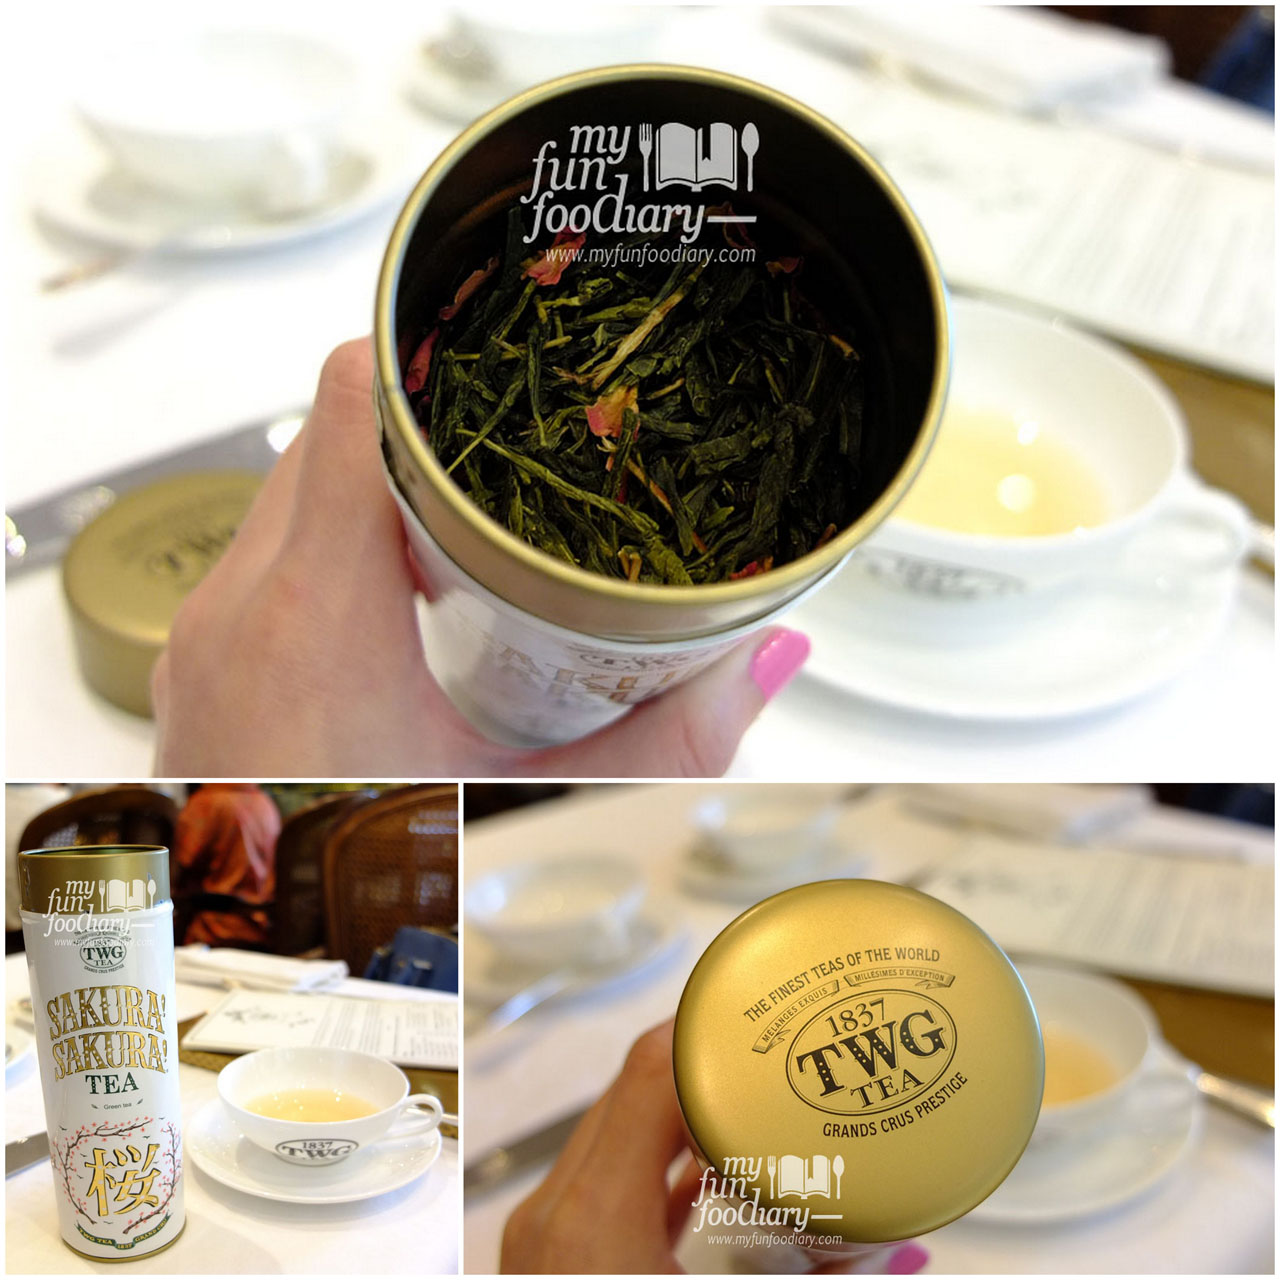 Sakura Tea by TWG Tea